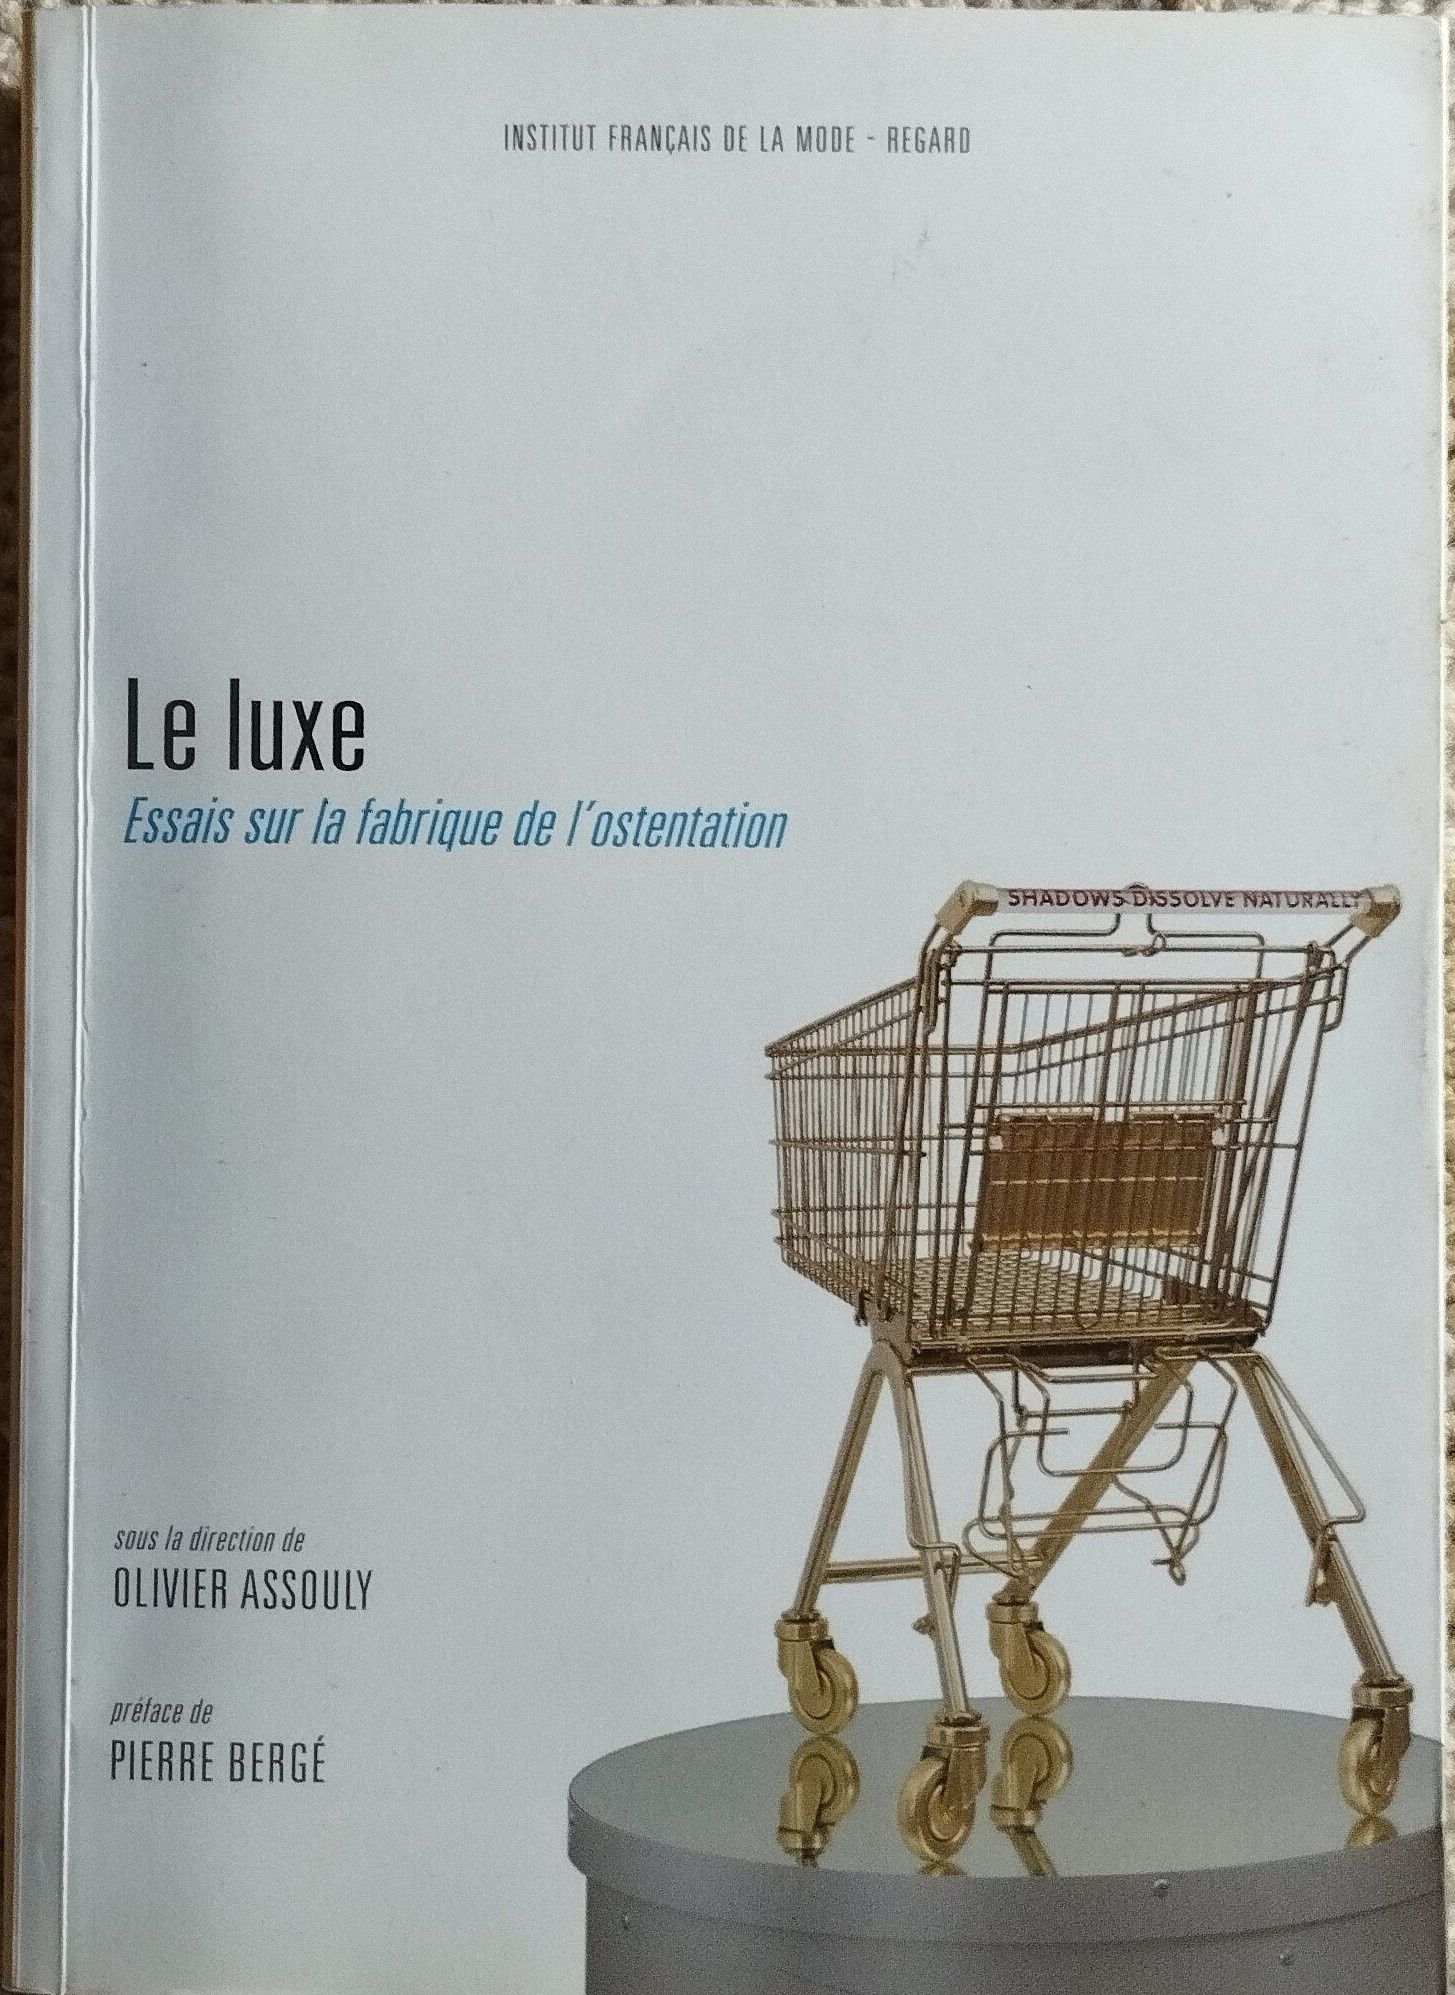 Le Luxe, essais sur la fabrique de l'ostentation, Pierre Bergé
Le Lu